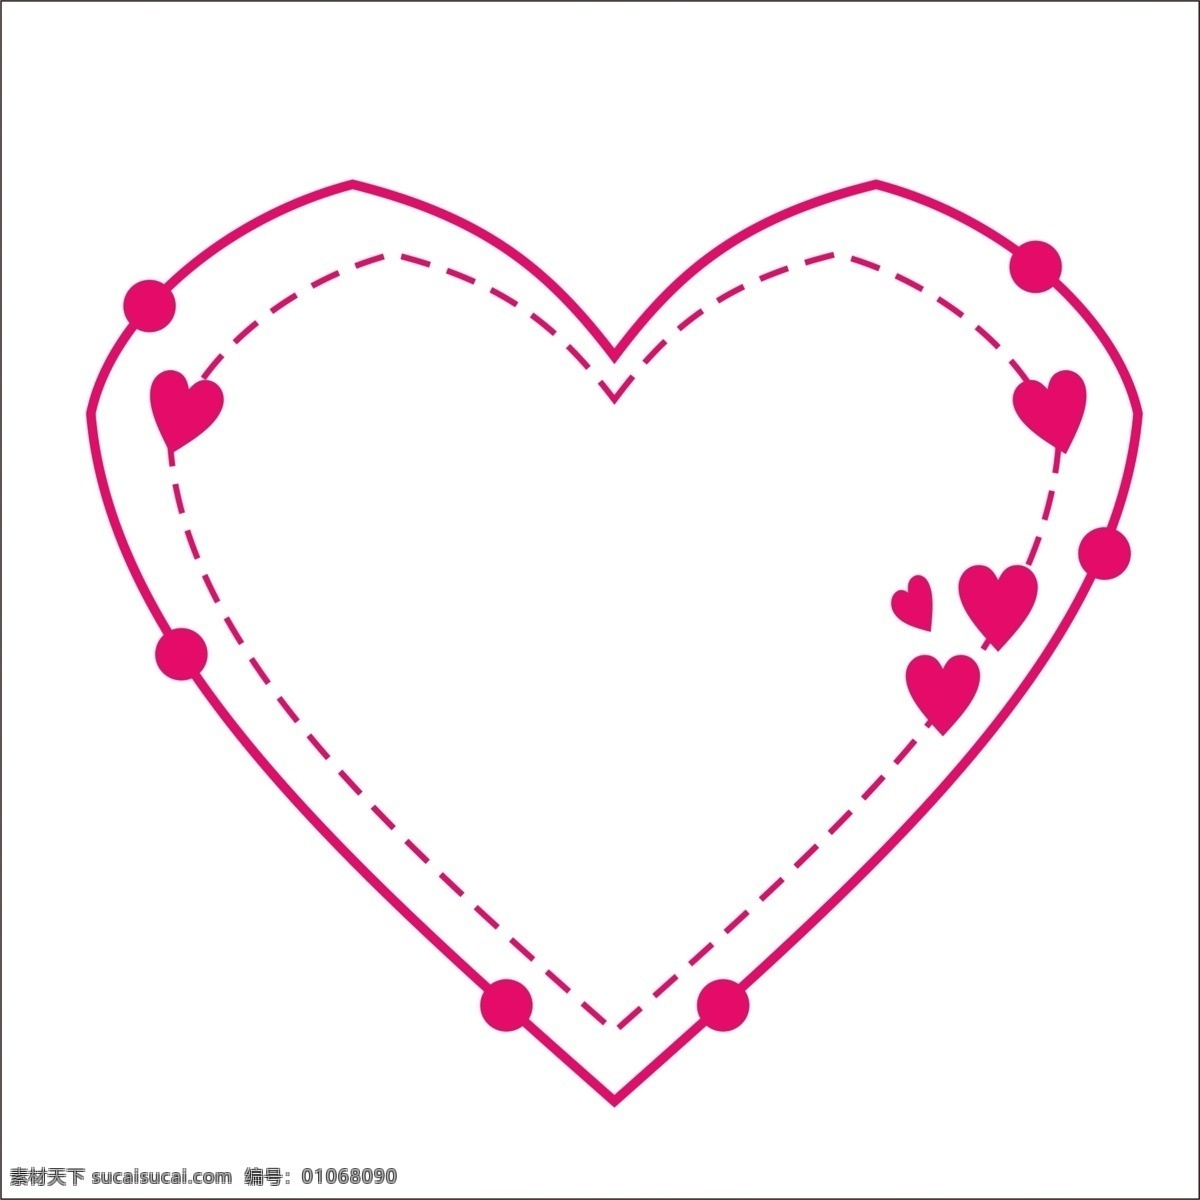 粉色 手绘 可爱 卡通 爱心 边框 唯美 图形 唯美水彩粉色 粉色爱心边框 海报边框 对话框 粉色爱心 爱心对话框